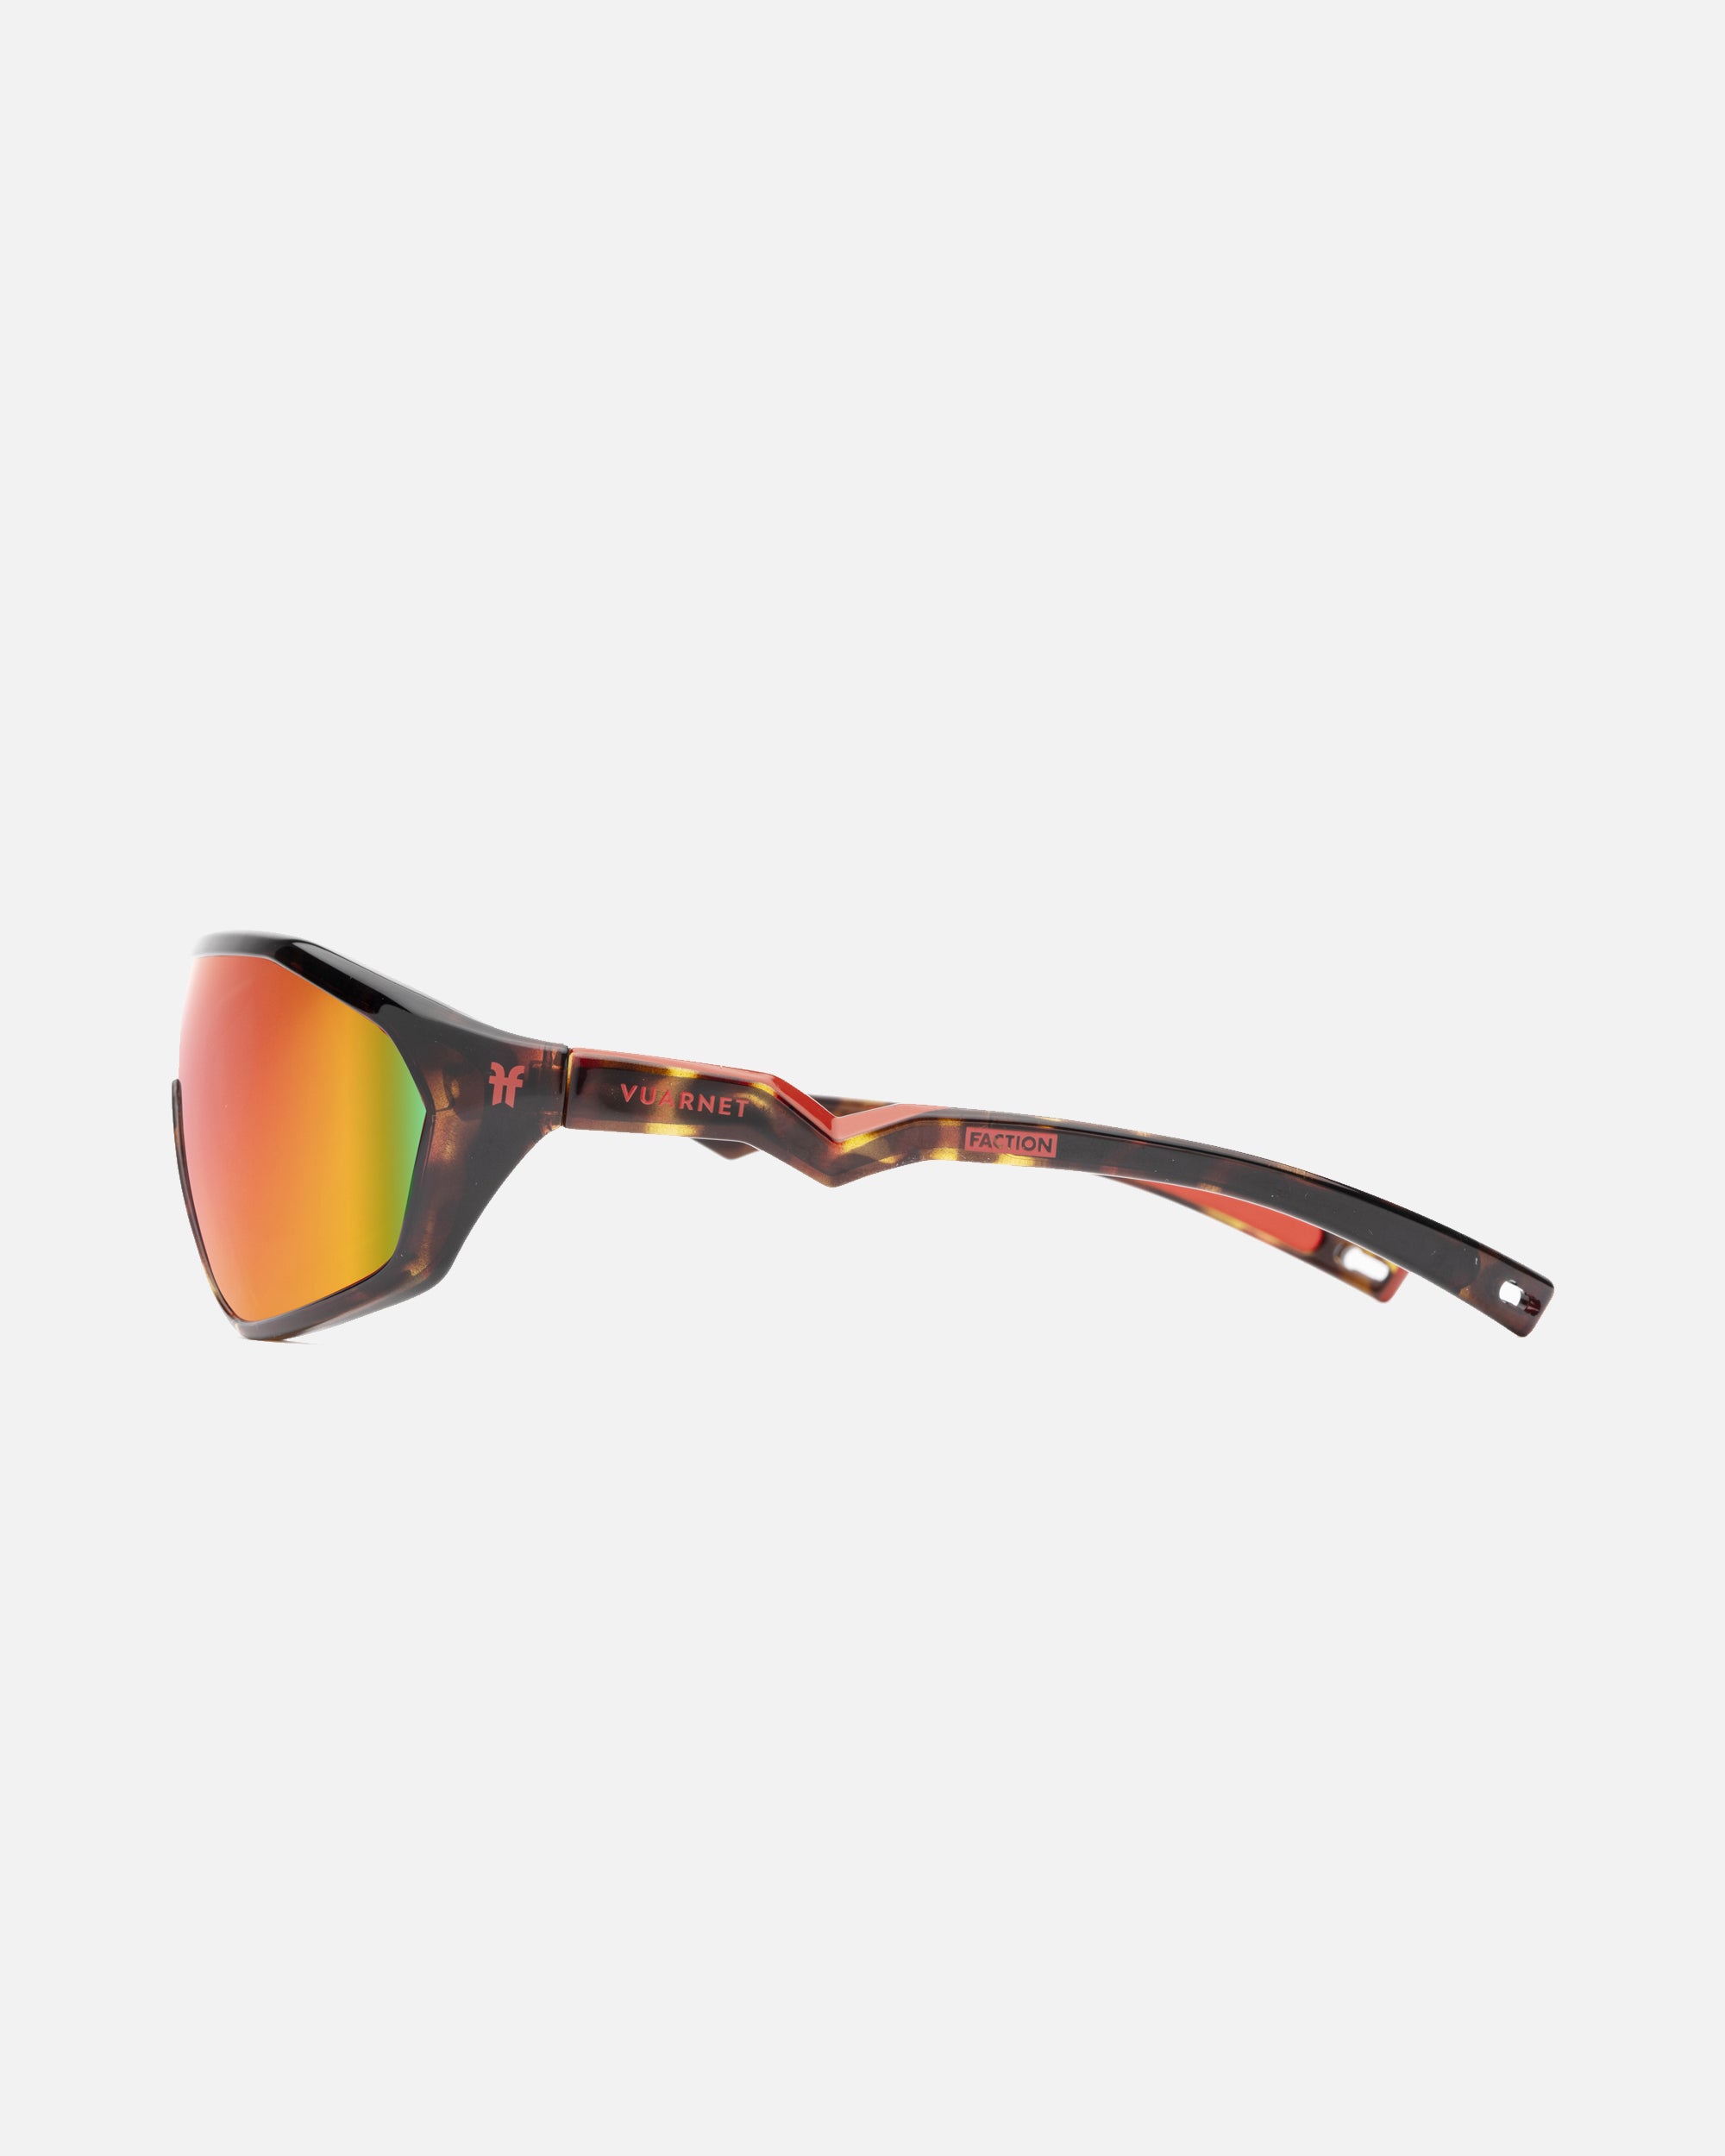 Vuarnet Sunglasses VL000300017184 VL0003 LEGEND 03/The Dude Black + Skilynx  | eBay